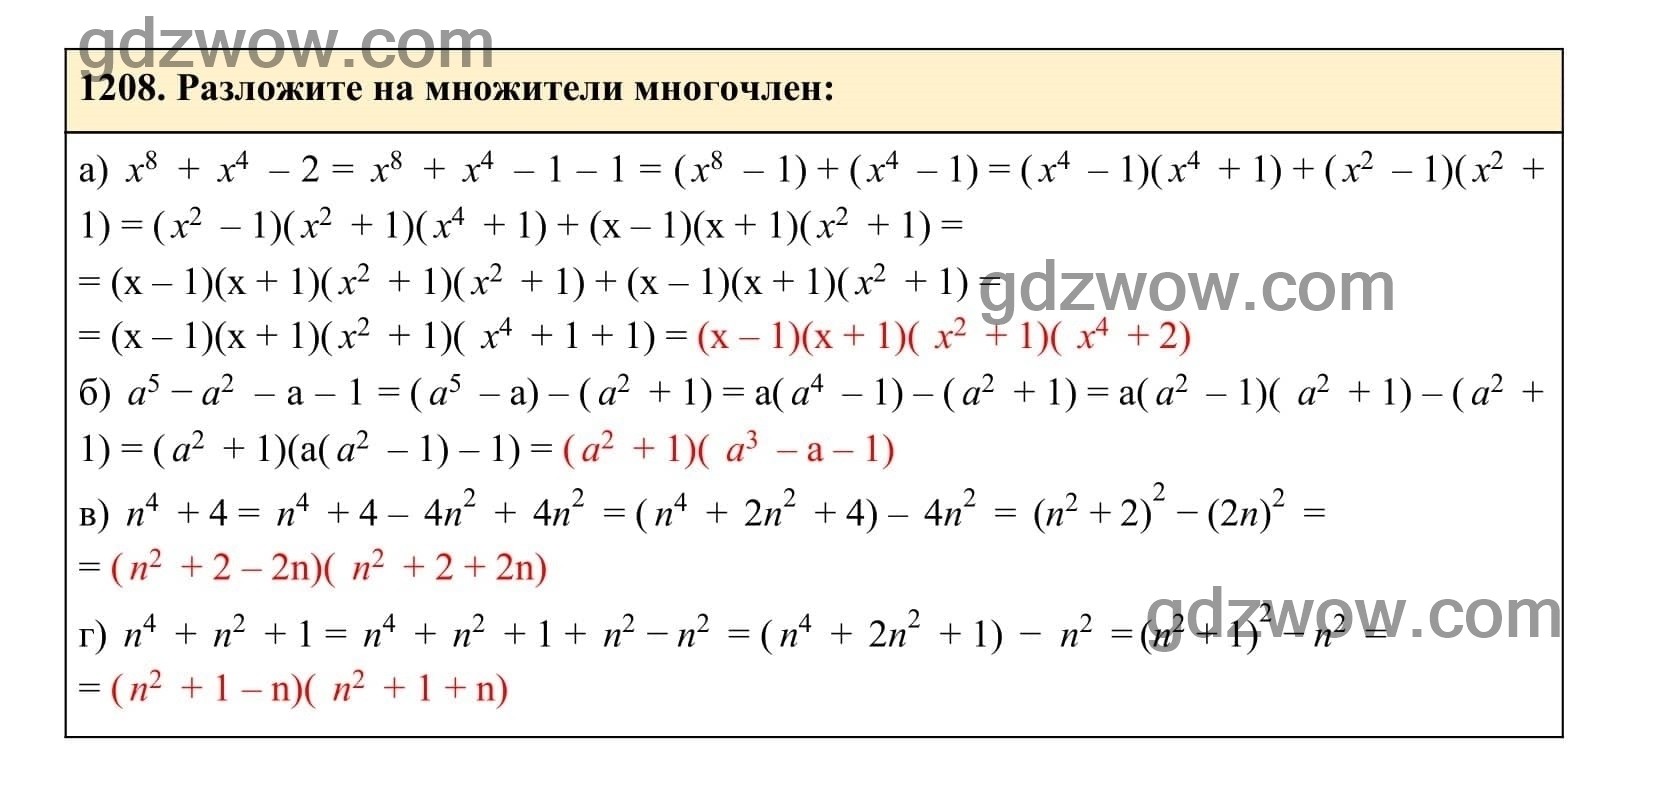 Упражнение 1208 - ГДЗ по Алгебре 7 класс Учебник Макарычев (решебник) - GDZwow